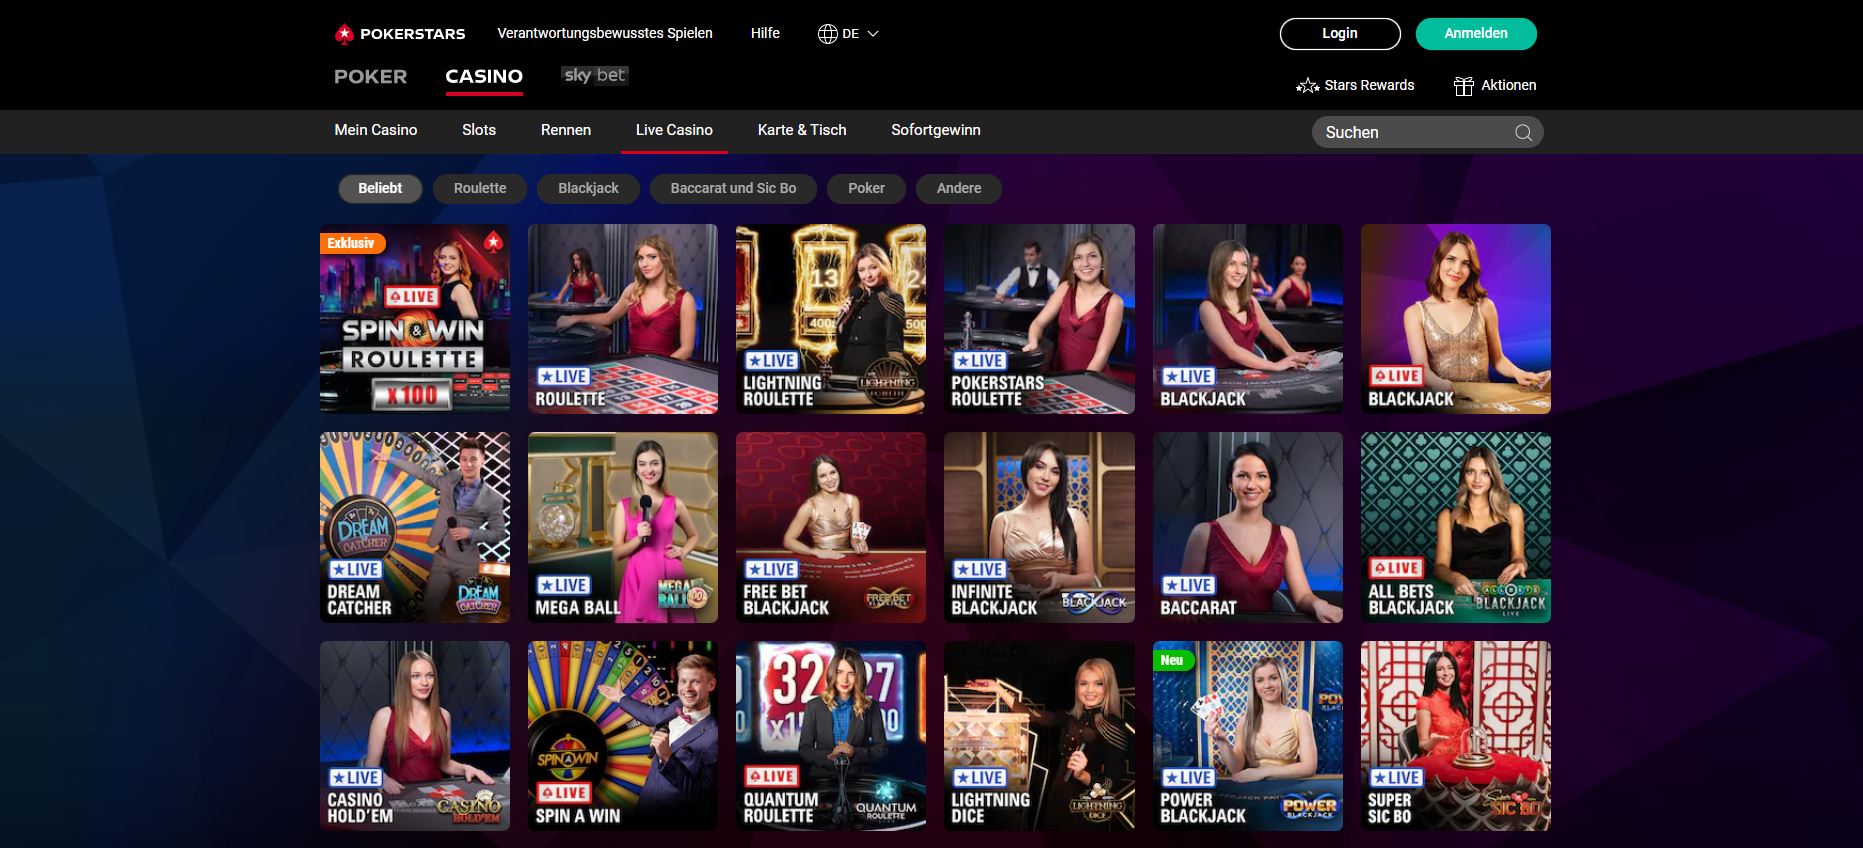 Die Startseite des Live Dealer Bereichs vom Pokerstars Casino.